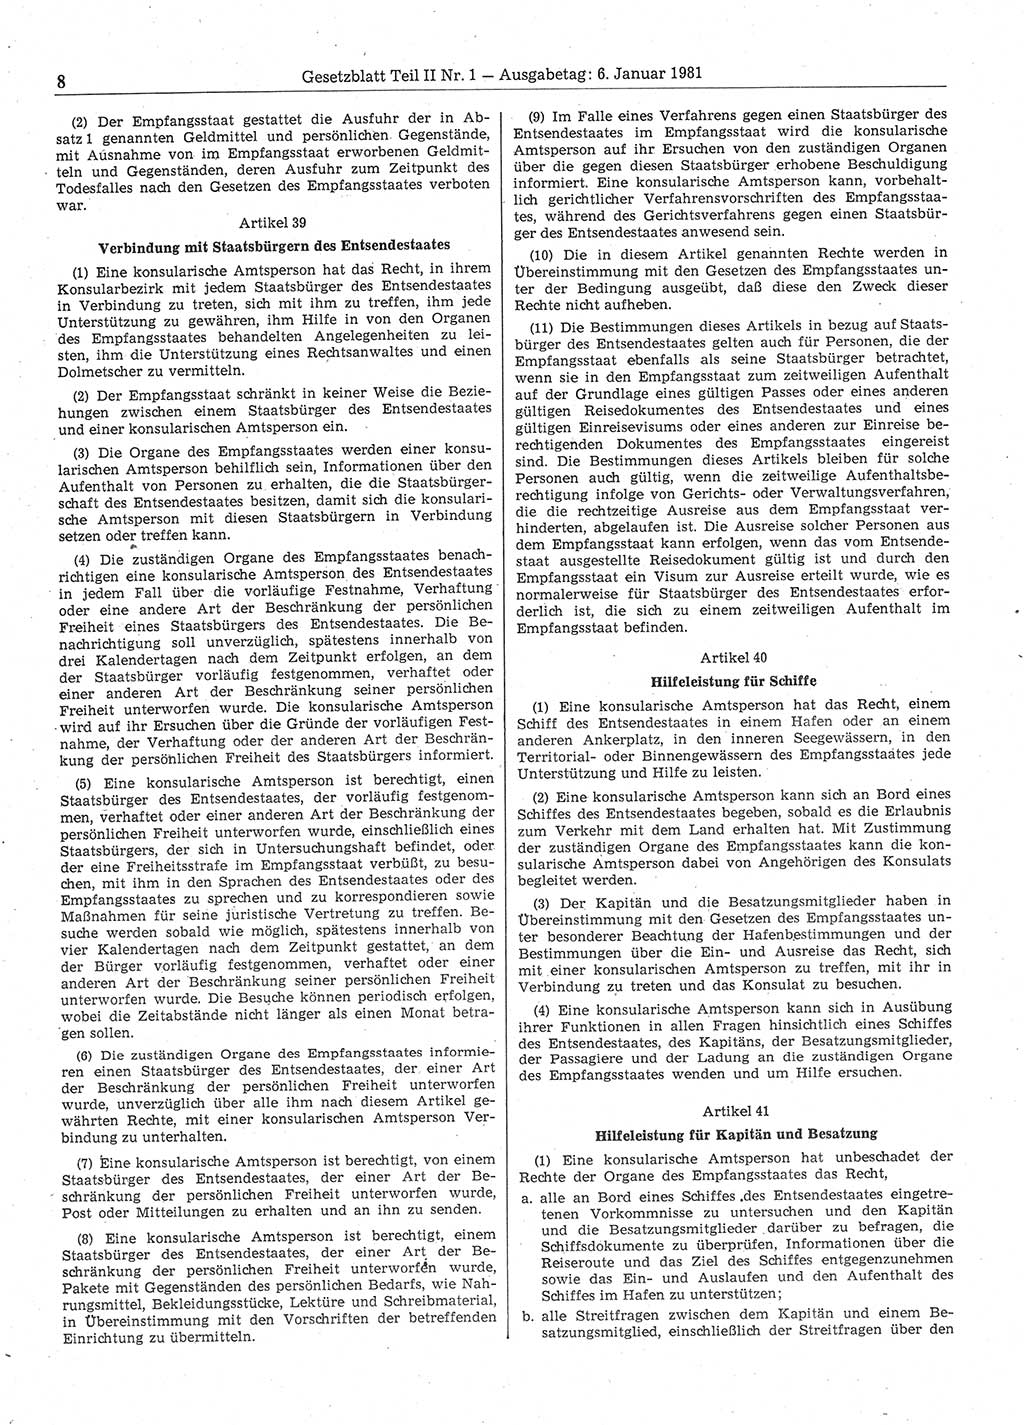 Gesetzblatt (GBl.) der Deutschen Demokratischen Republik (DDR) Teil ⅠⅠ 1981, Seite 8 (GBl. DDR ⅠⅠ 1981, S. 8)